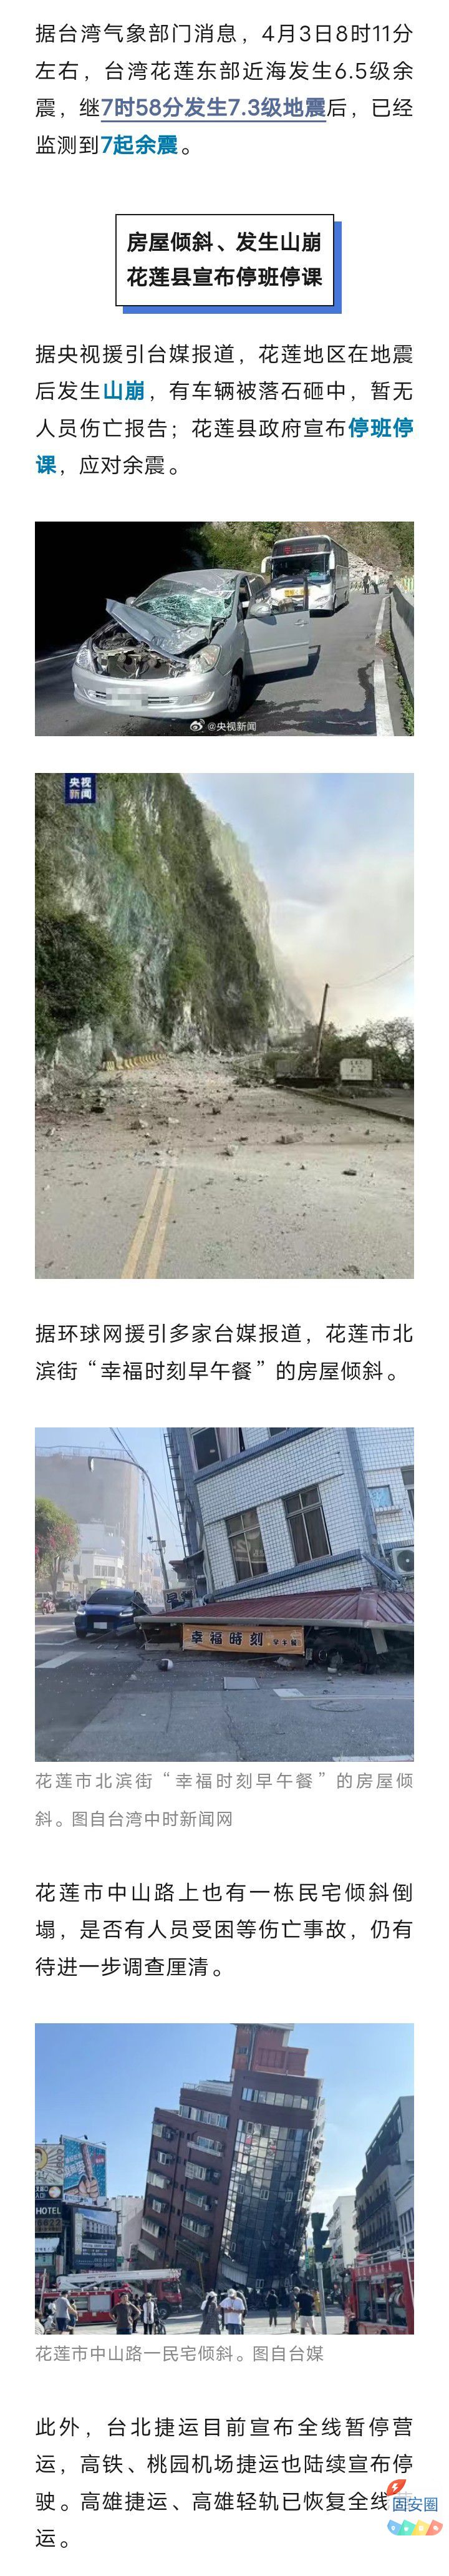 房屋倾斜、山崩，停班停课停运！台湾花莲已监测到7起余震，地震成因——568 作者:乁沙漠 帖子ID:297903 